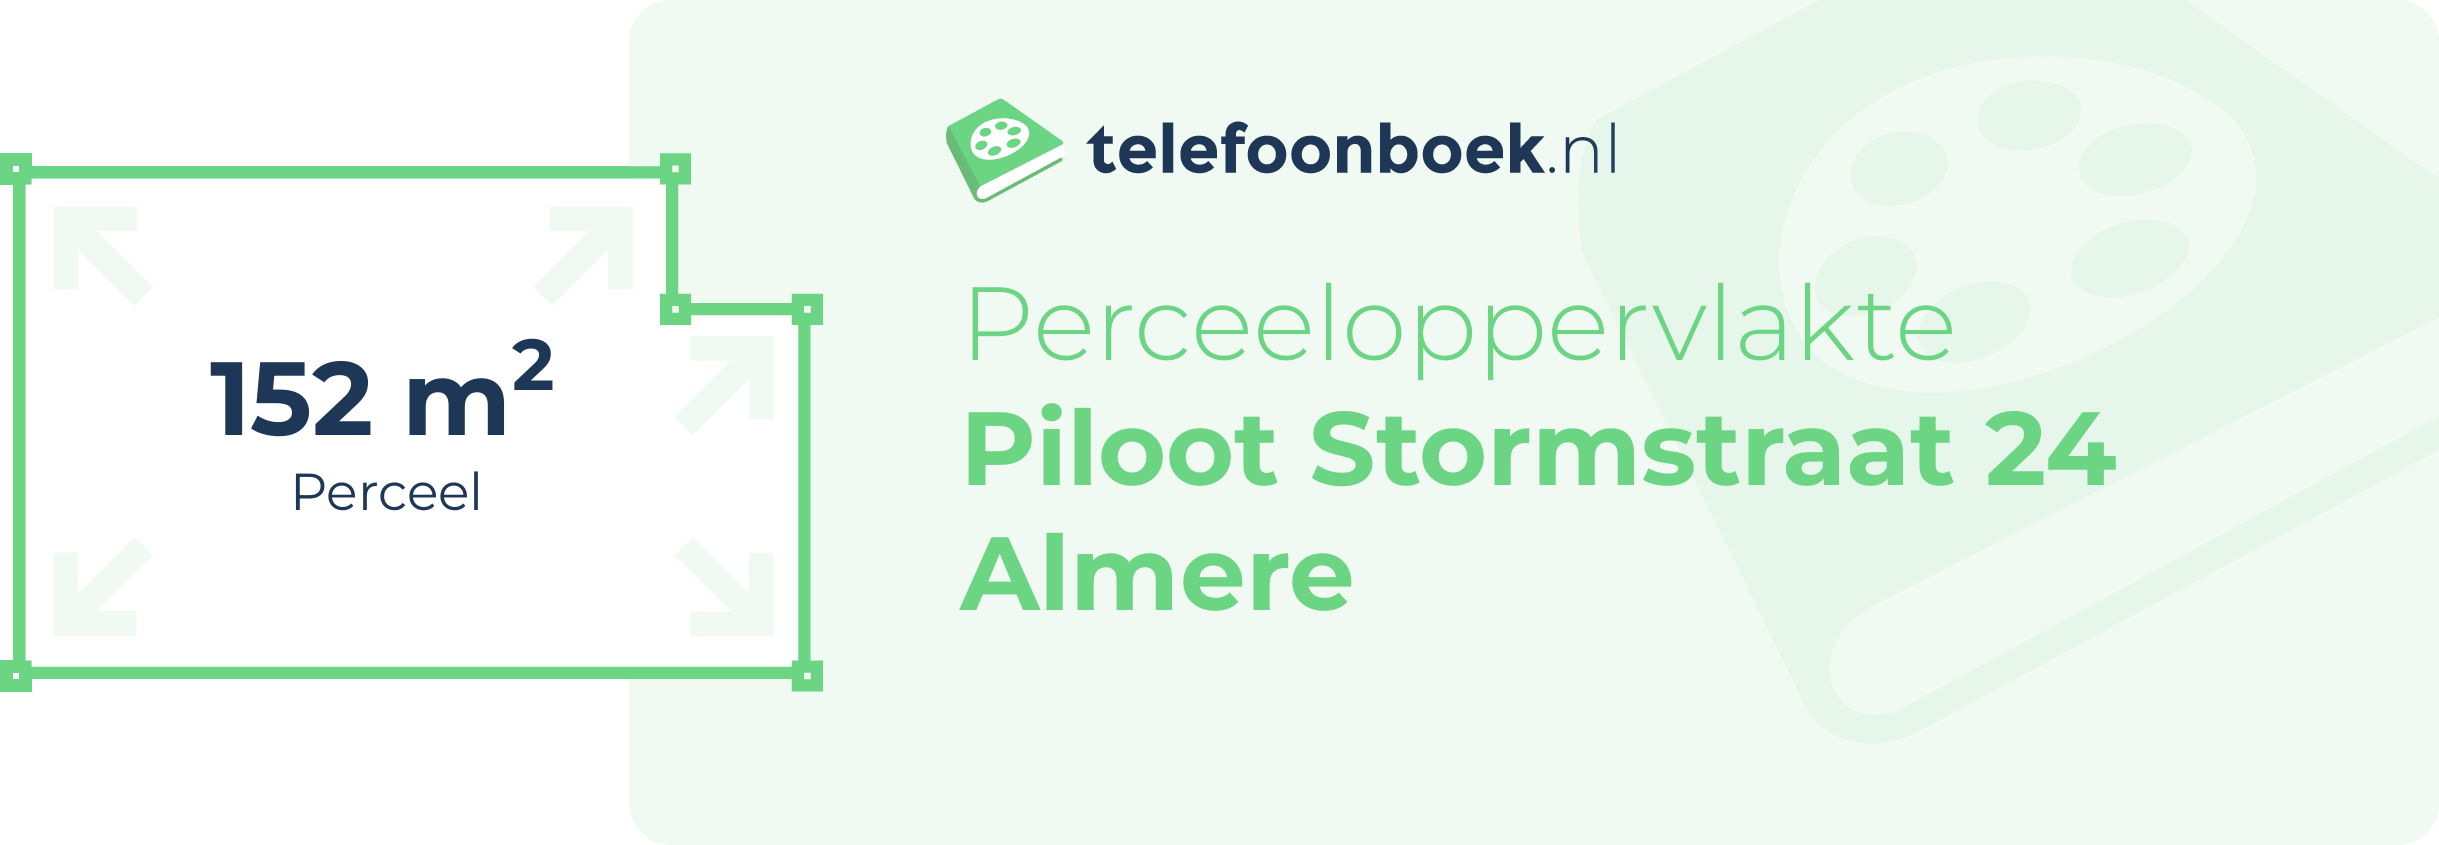 Perceeloppervlakte Piloot Stormstraat 24 Almere